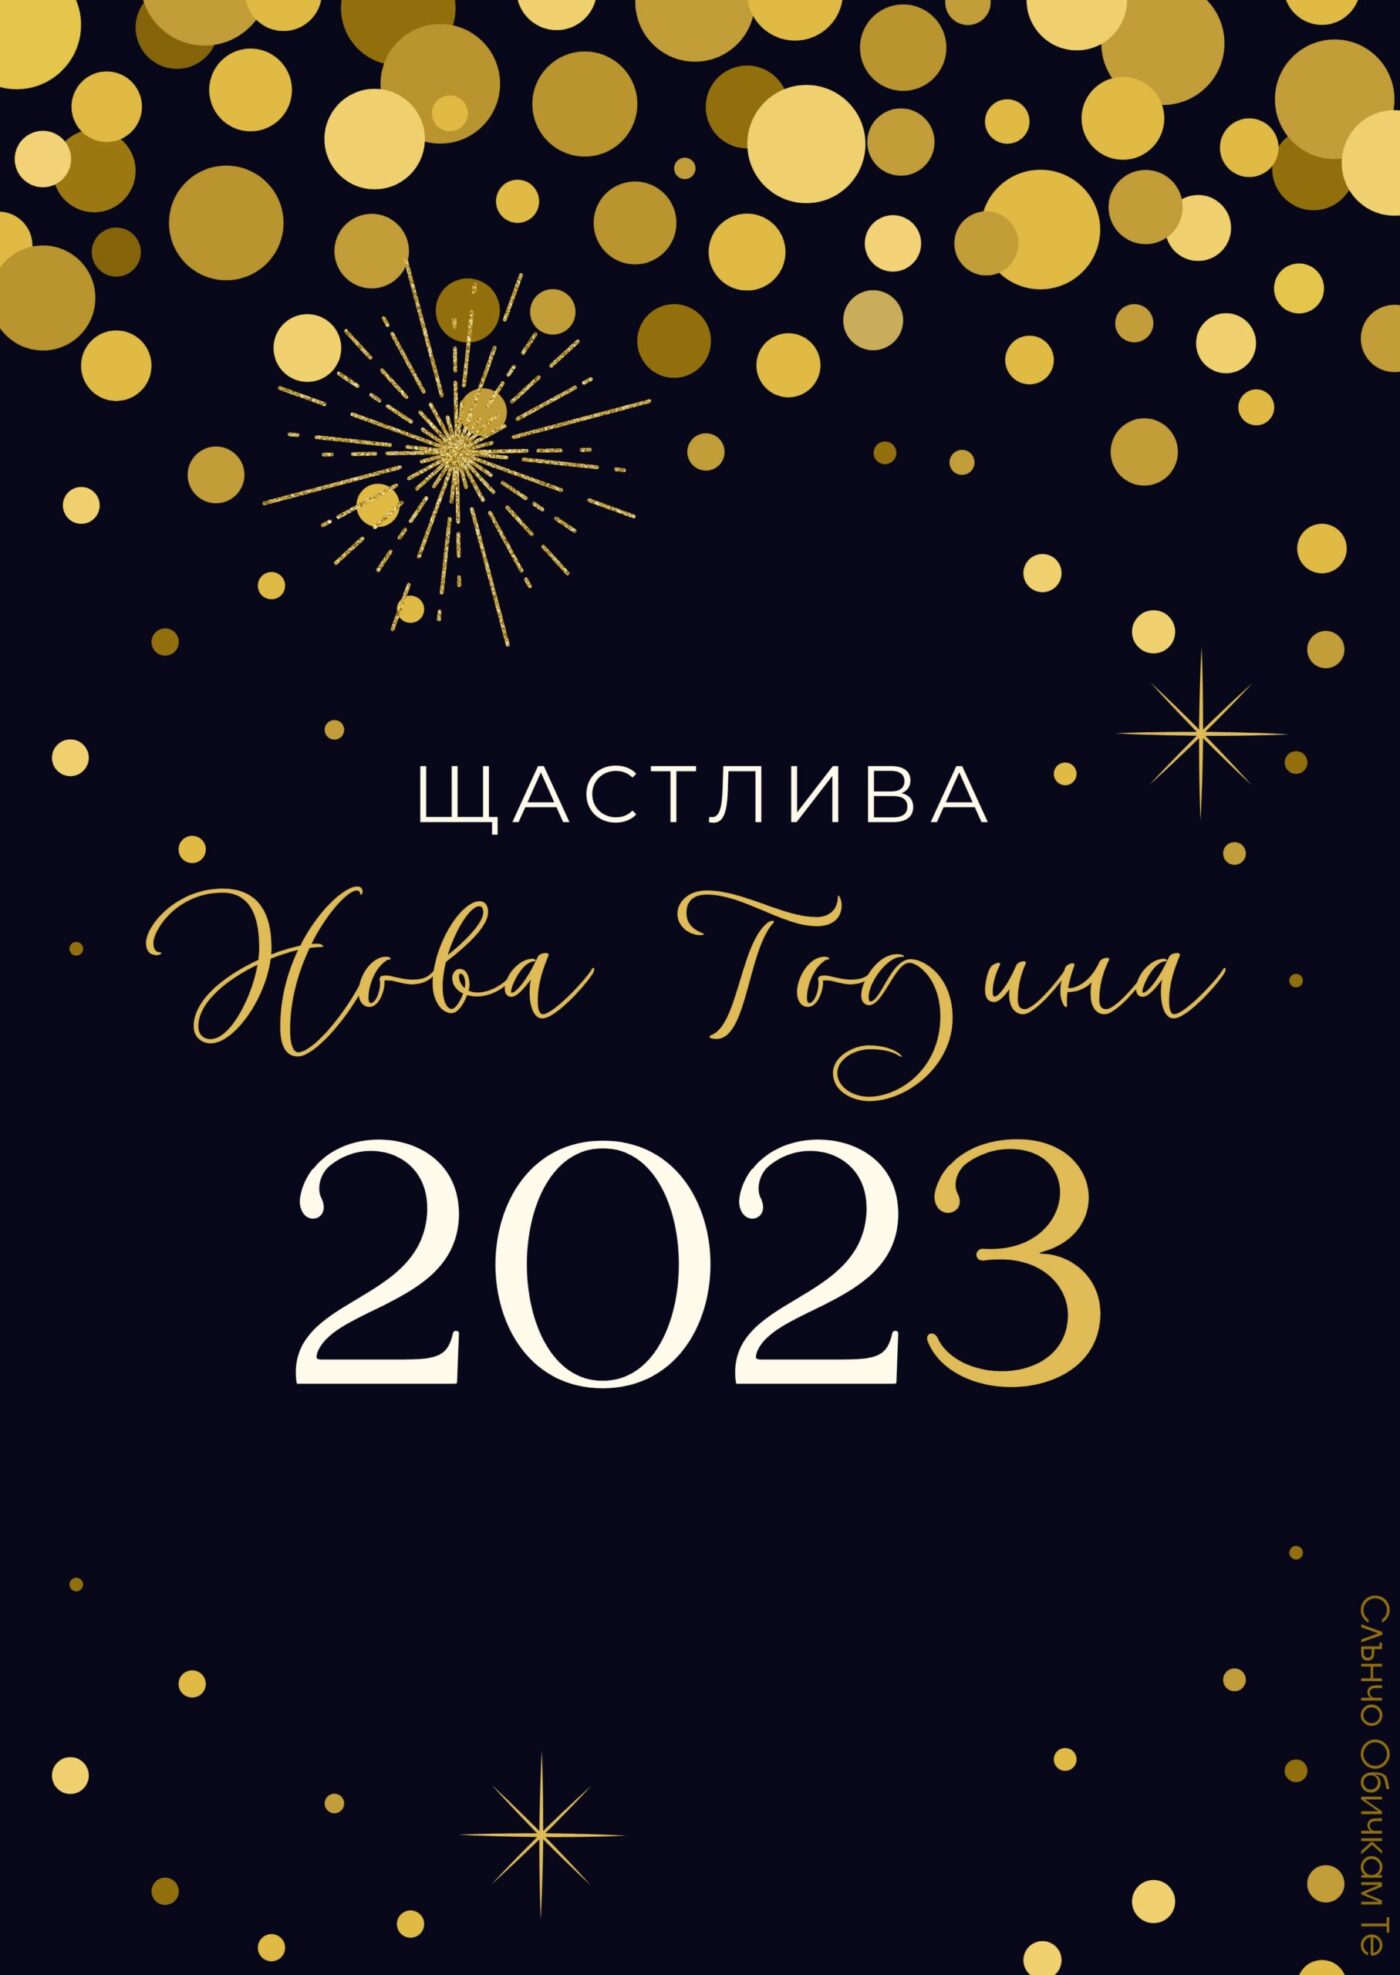 Щастлива Нова Година 2023 - новогодишни картички, картички за нова година 2023, пожелания за нова година, нови новогодишни картички от слънчо обичкам те